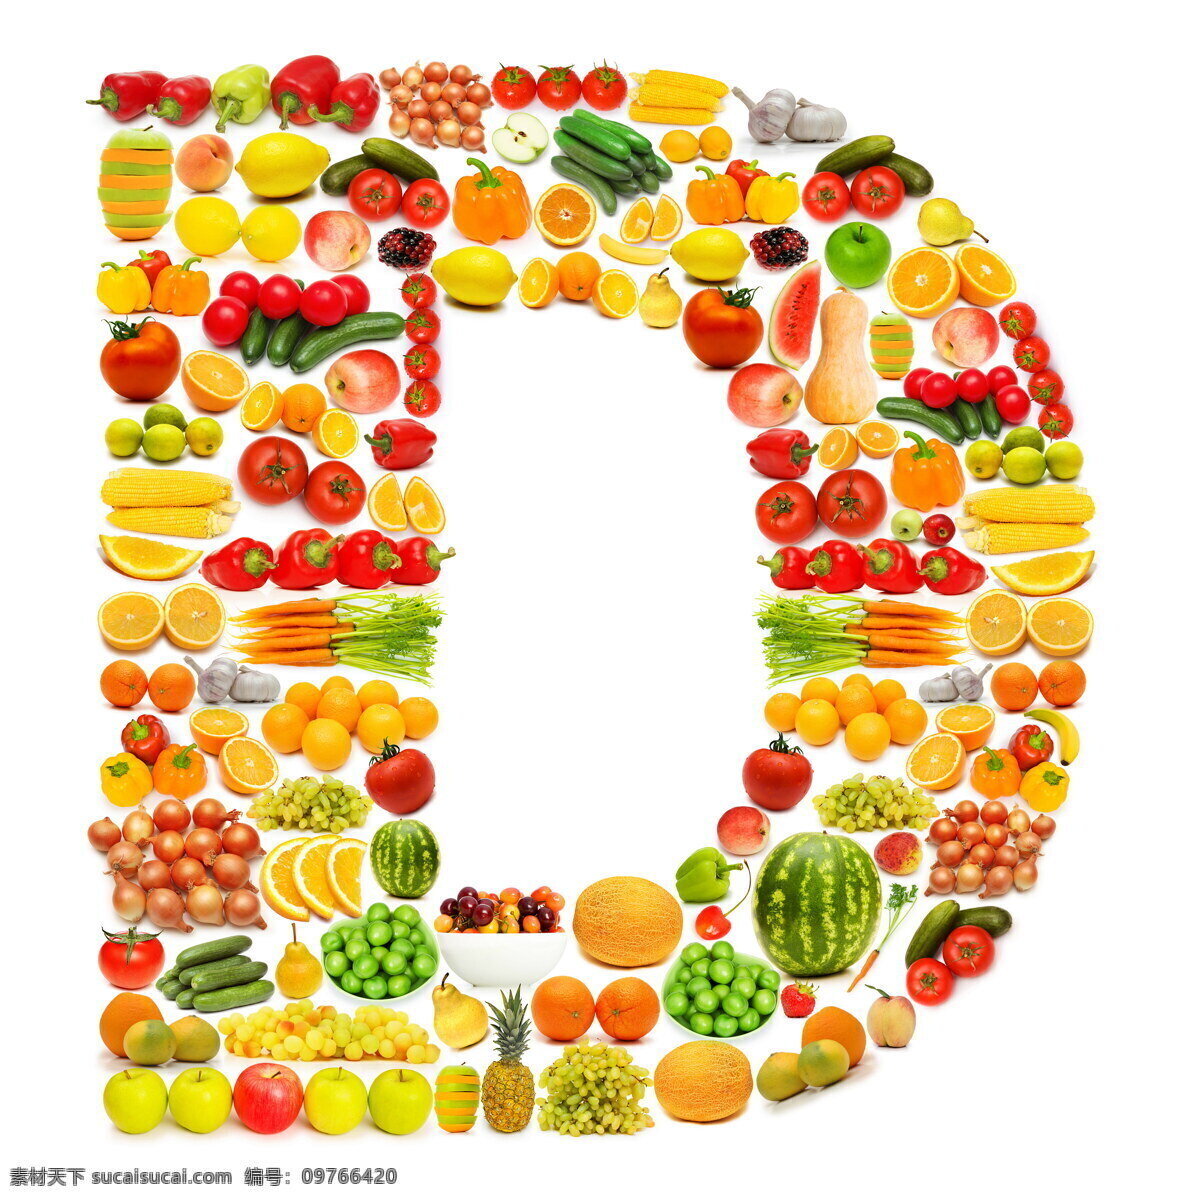 蔬菜水果 组成 字母 d 辣椒 葡萄 黄瓜 橙子 香蕉 蔬菜 水果 食物 水果蔬菜 餐饮美食 书画文字 文化艺术 白色